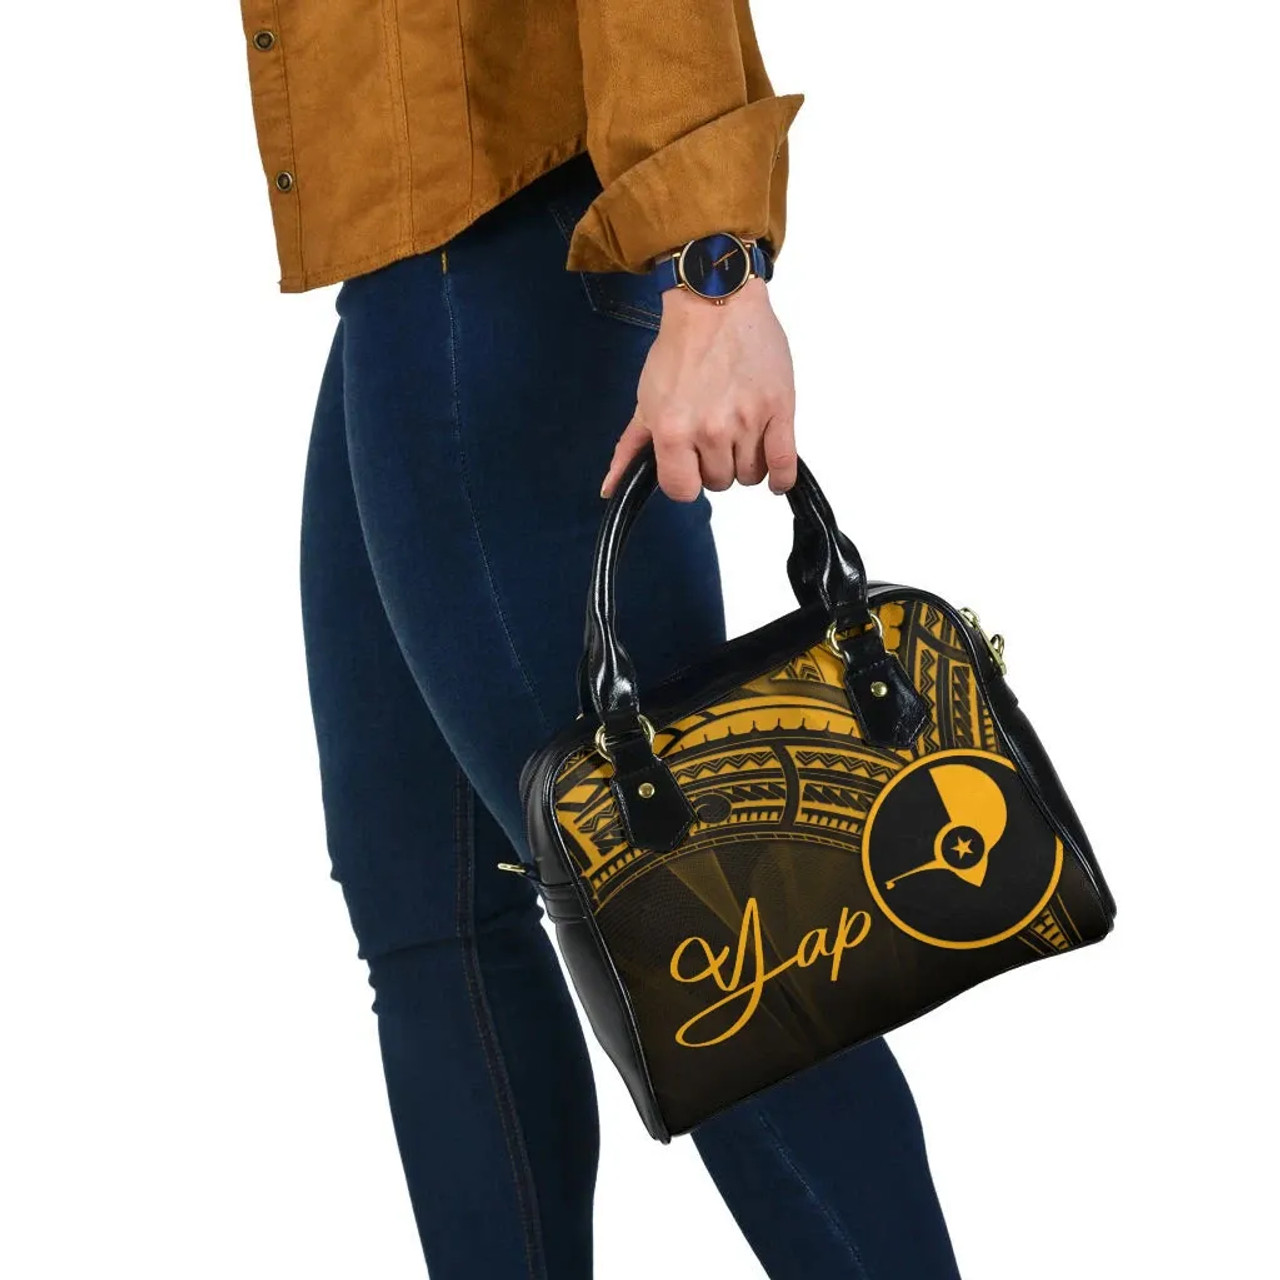 Yap State Shoulder Handbag - Cross Style Gold Color 2